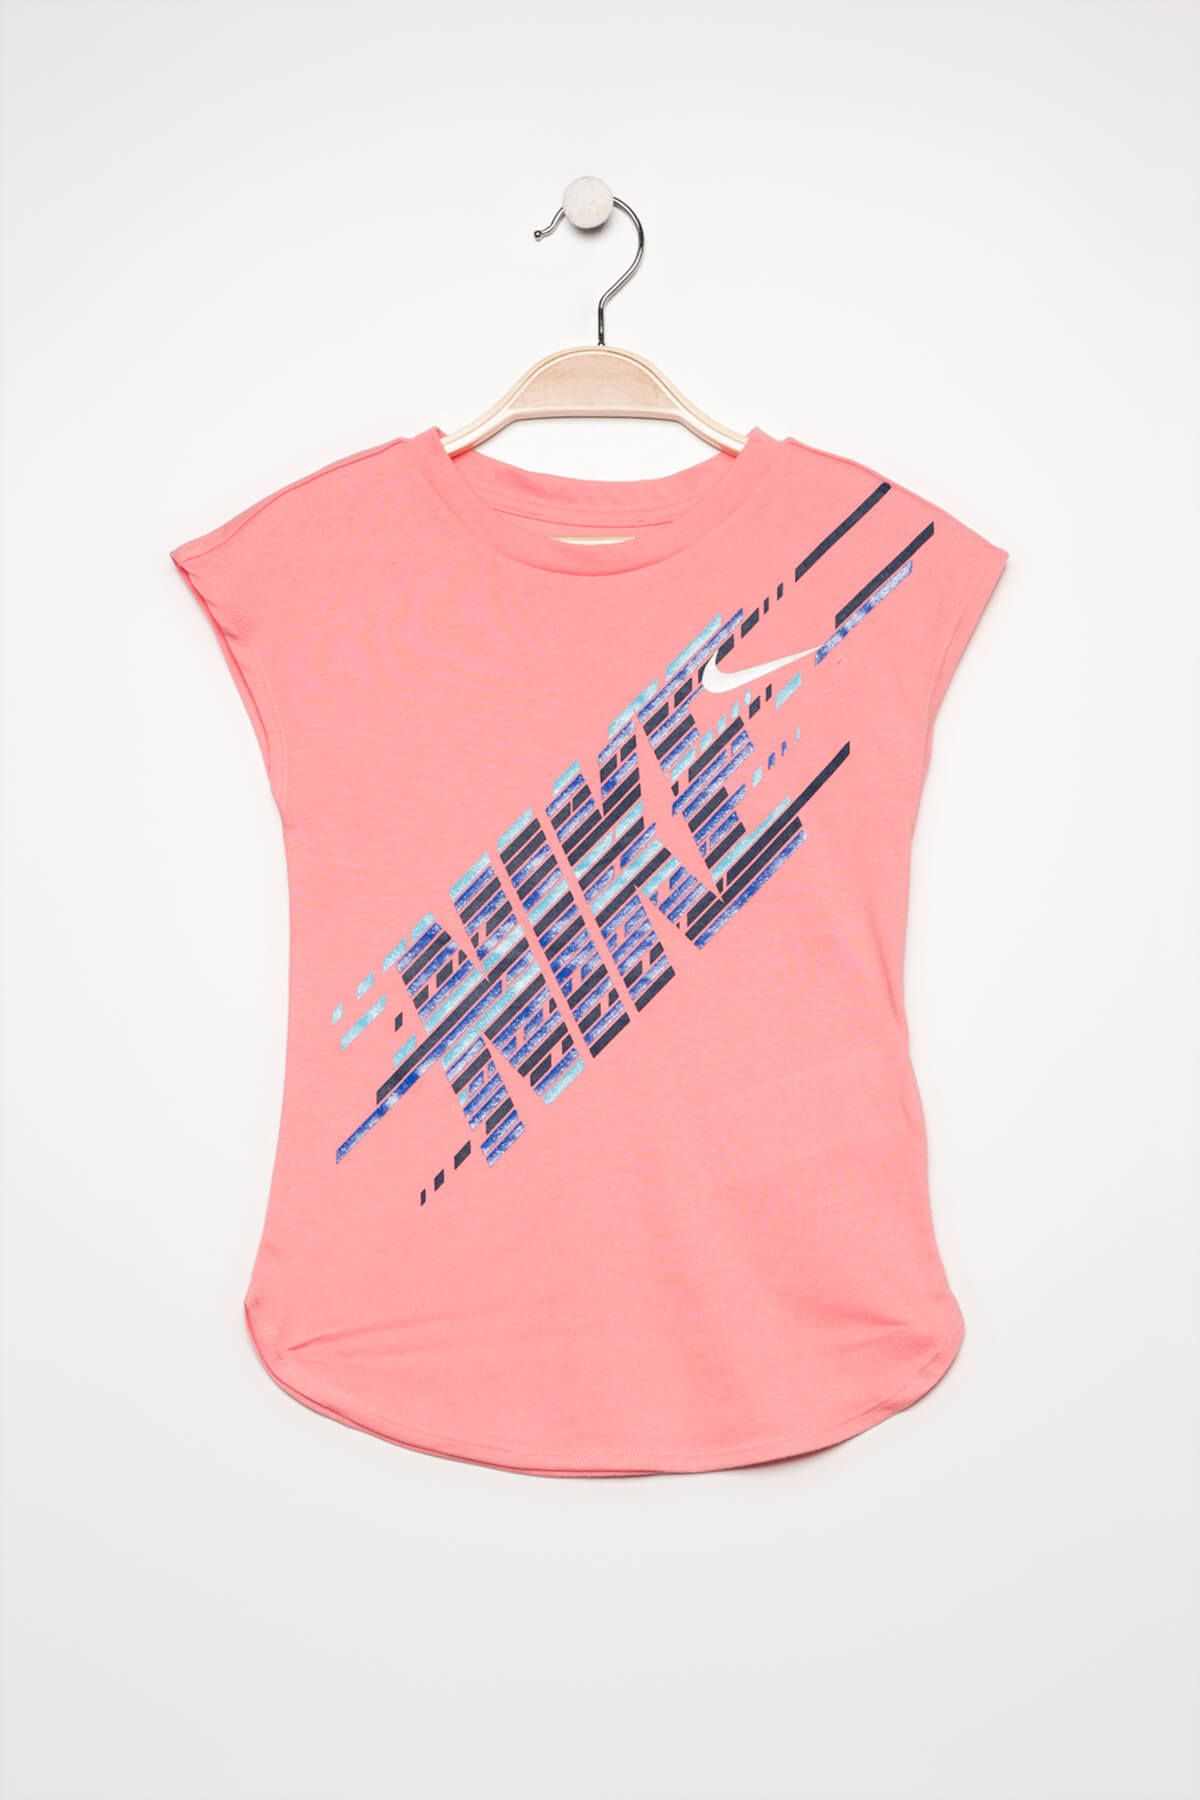 Nike Pembe Kız Çocuk T-shirt 36B991